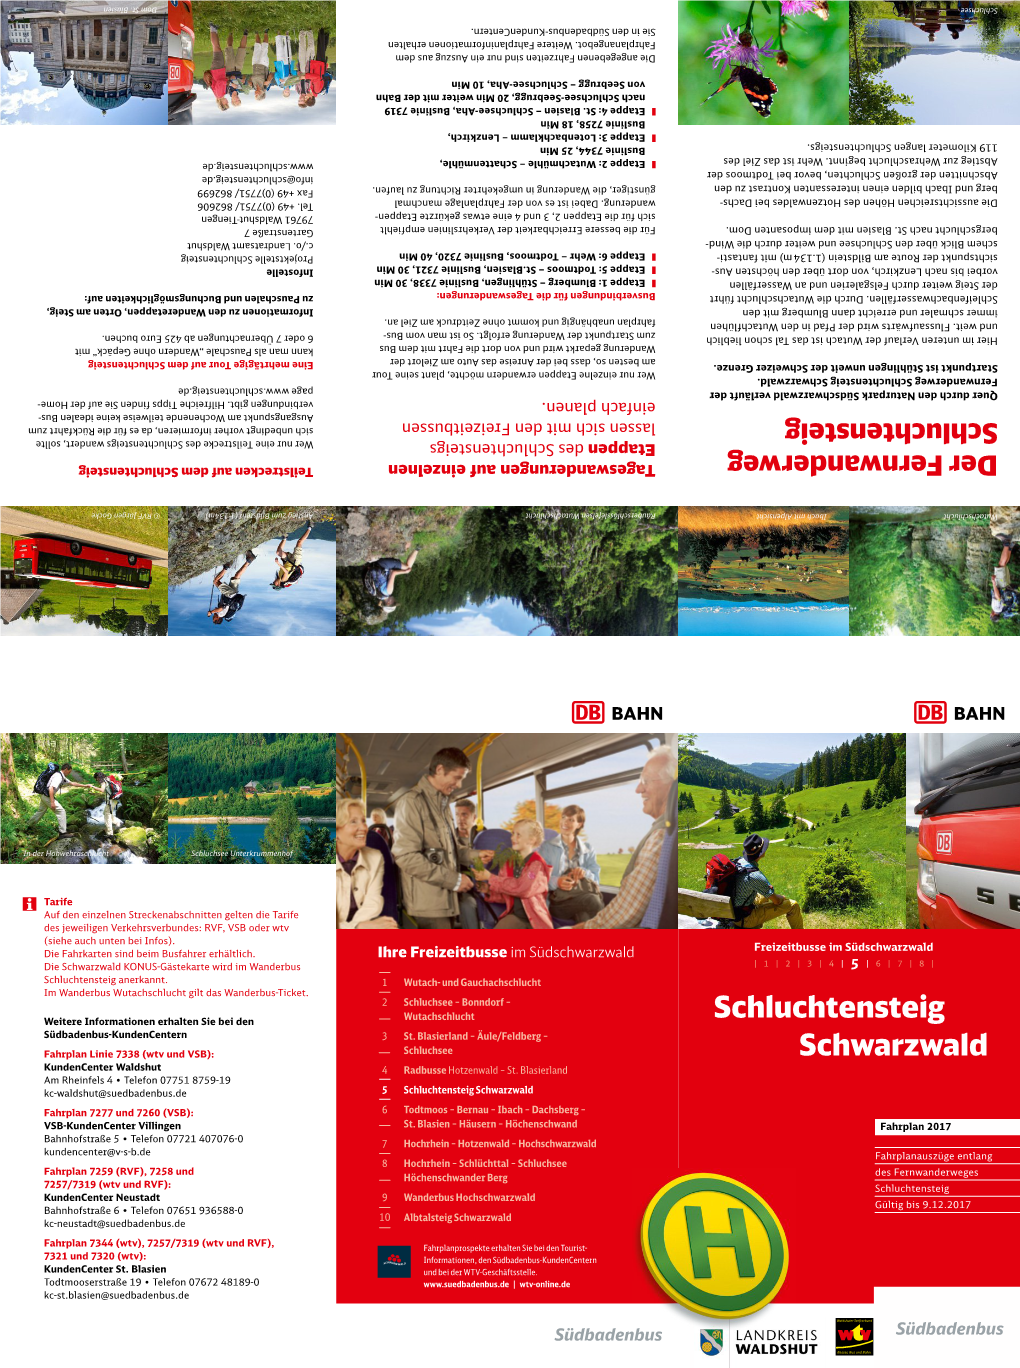 Schluchtensteig Schwarzwald Fahrplan 7277 Und 7260 (VSB): 6 Todtmoos – Bernau – Ibach – Dachsberg – VSB-Kundencenter Villingen St